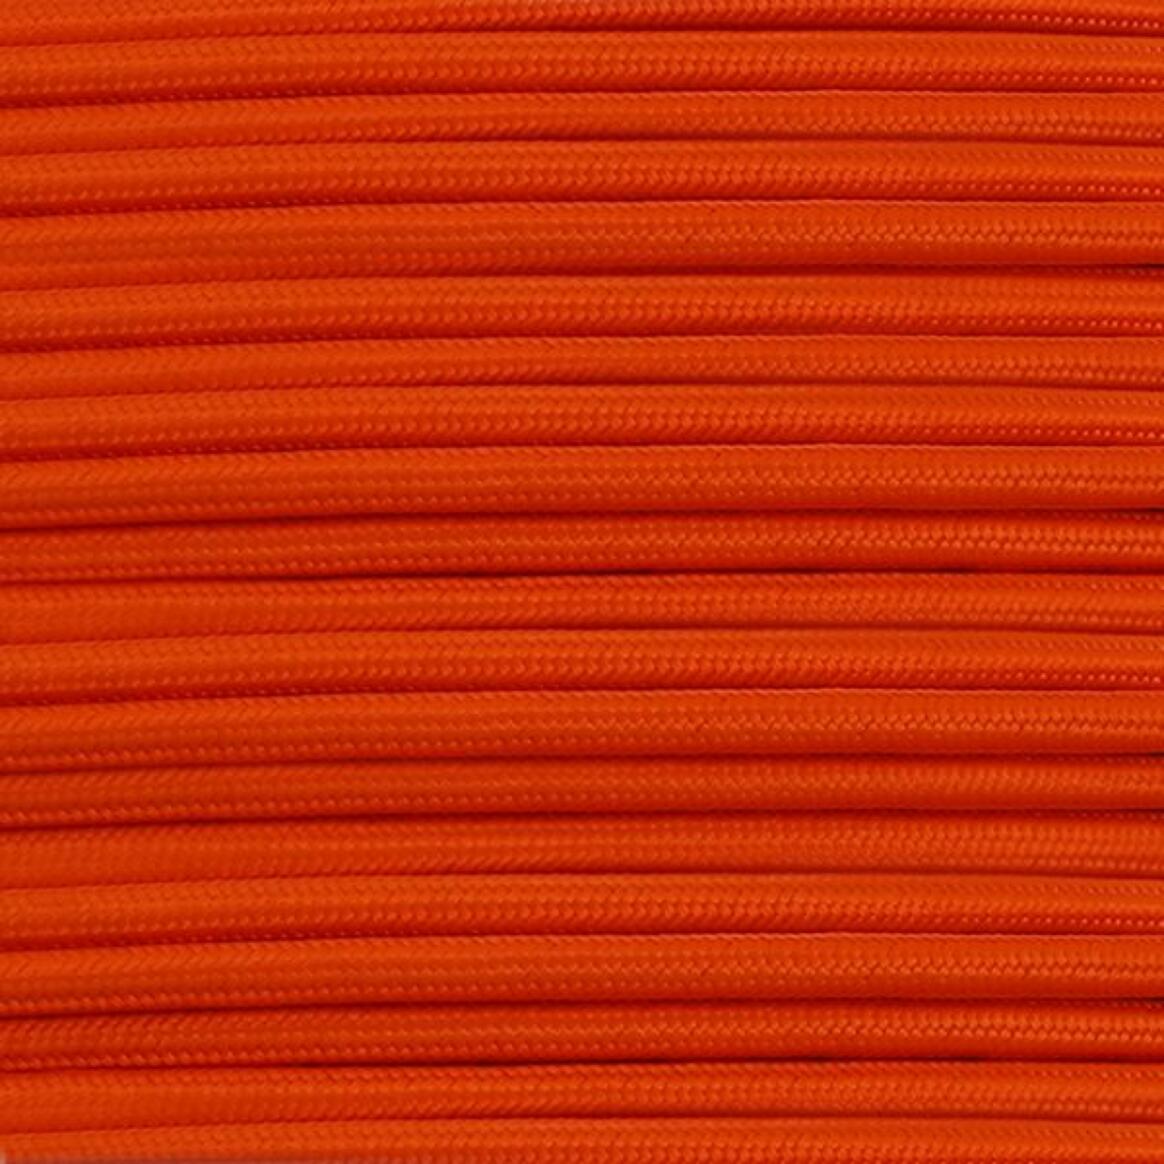 Câble tressé en tissu orange, rond à 3 conducteurs   main product image